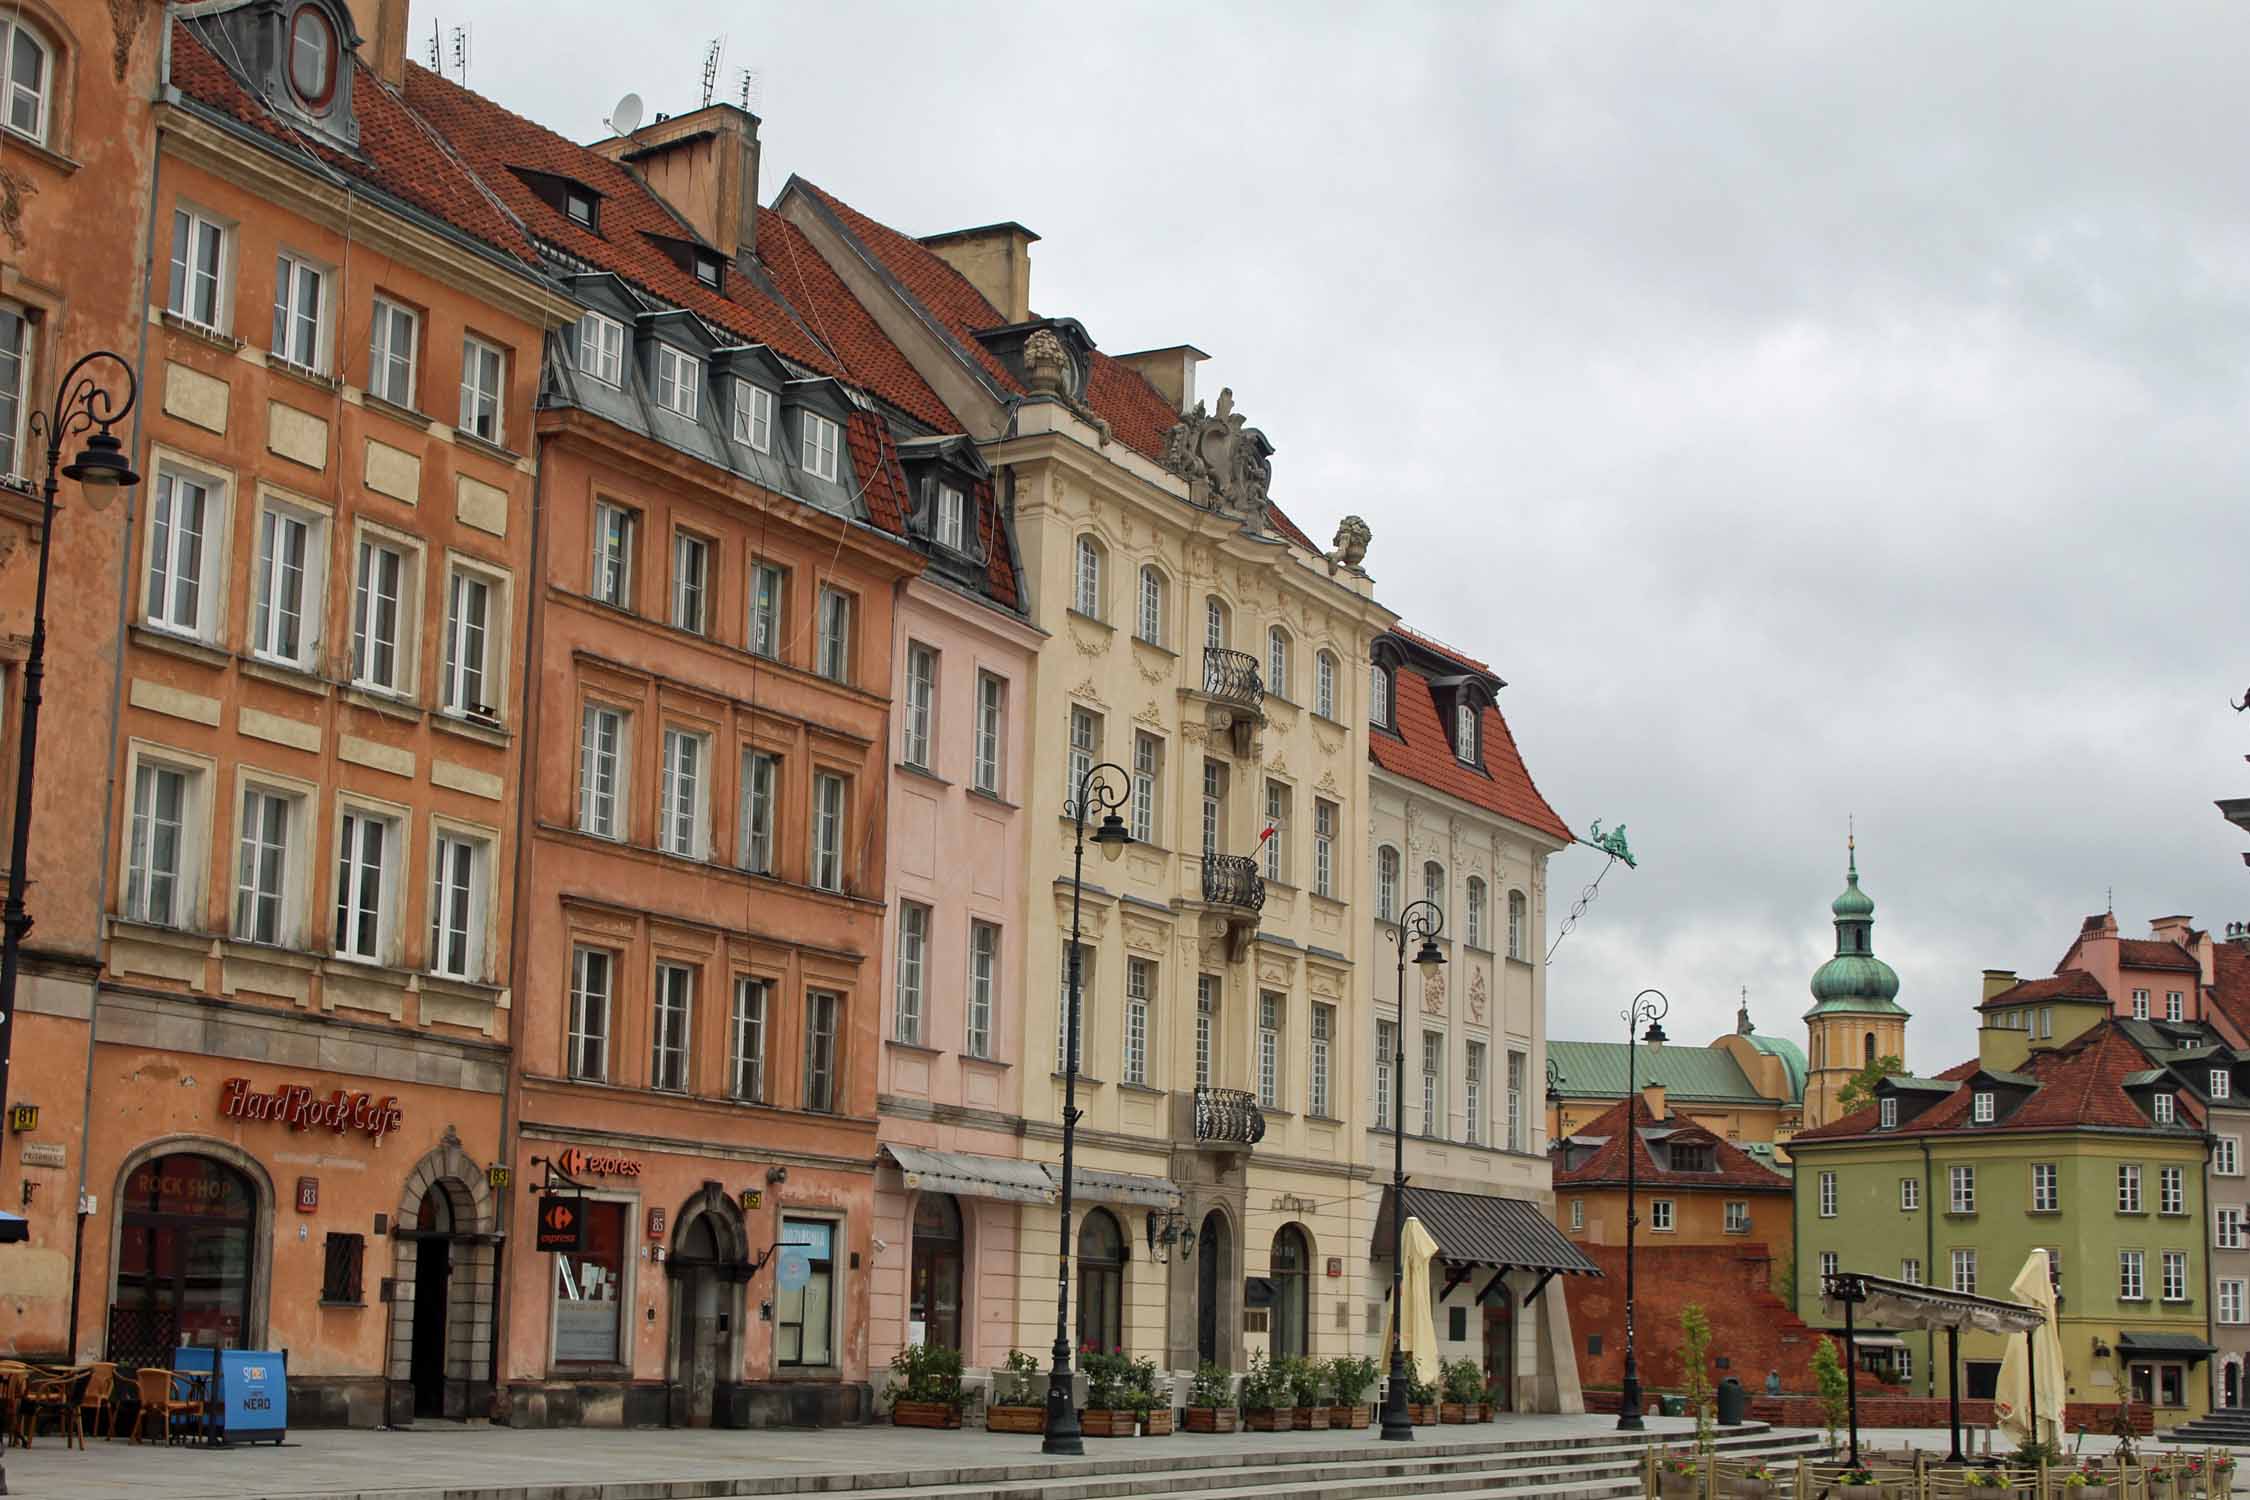 Varsovie, rue Krakowskie Przedmiescie, façades colorées